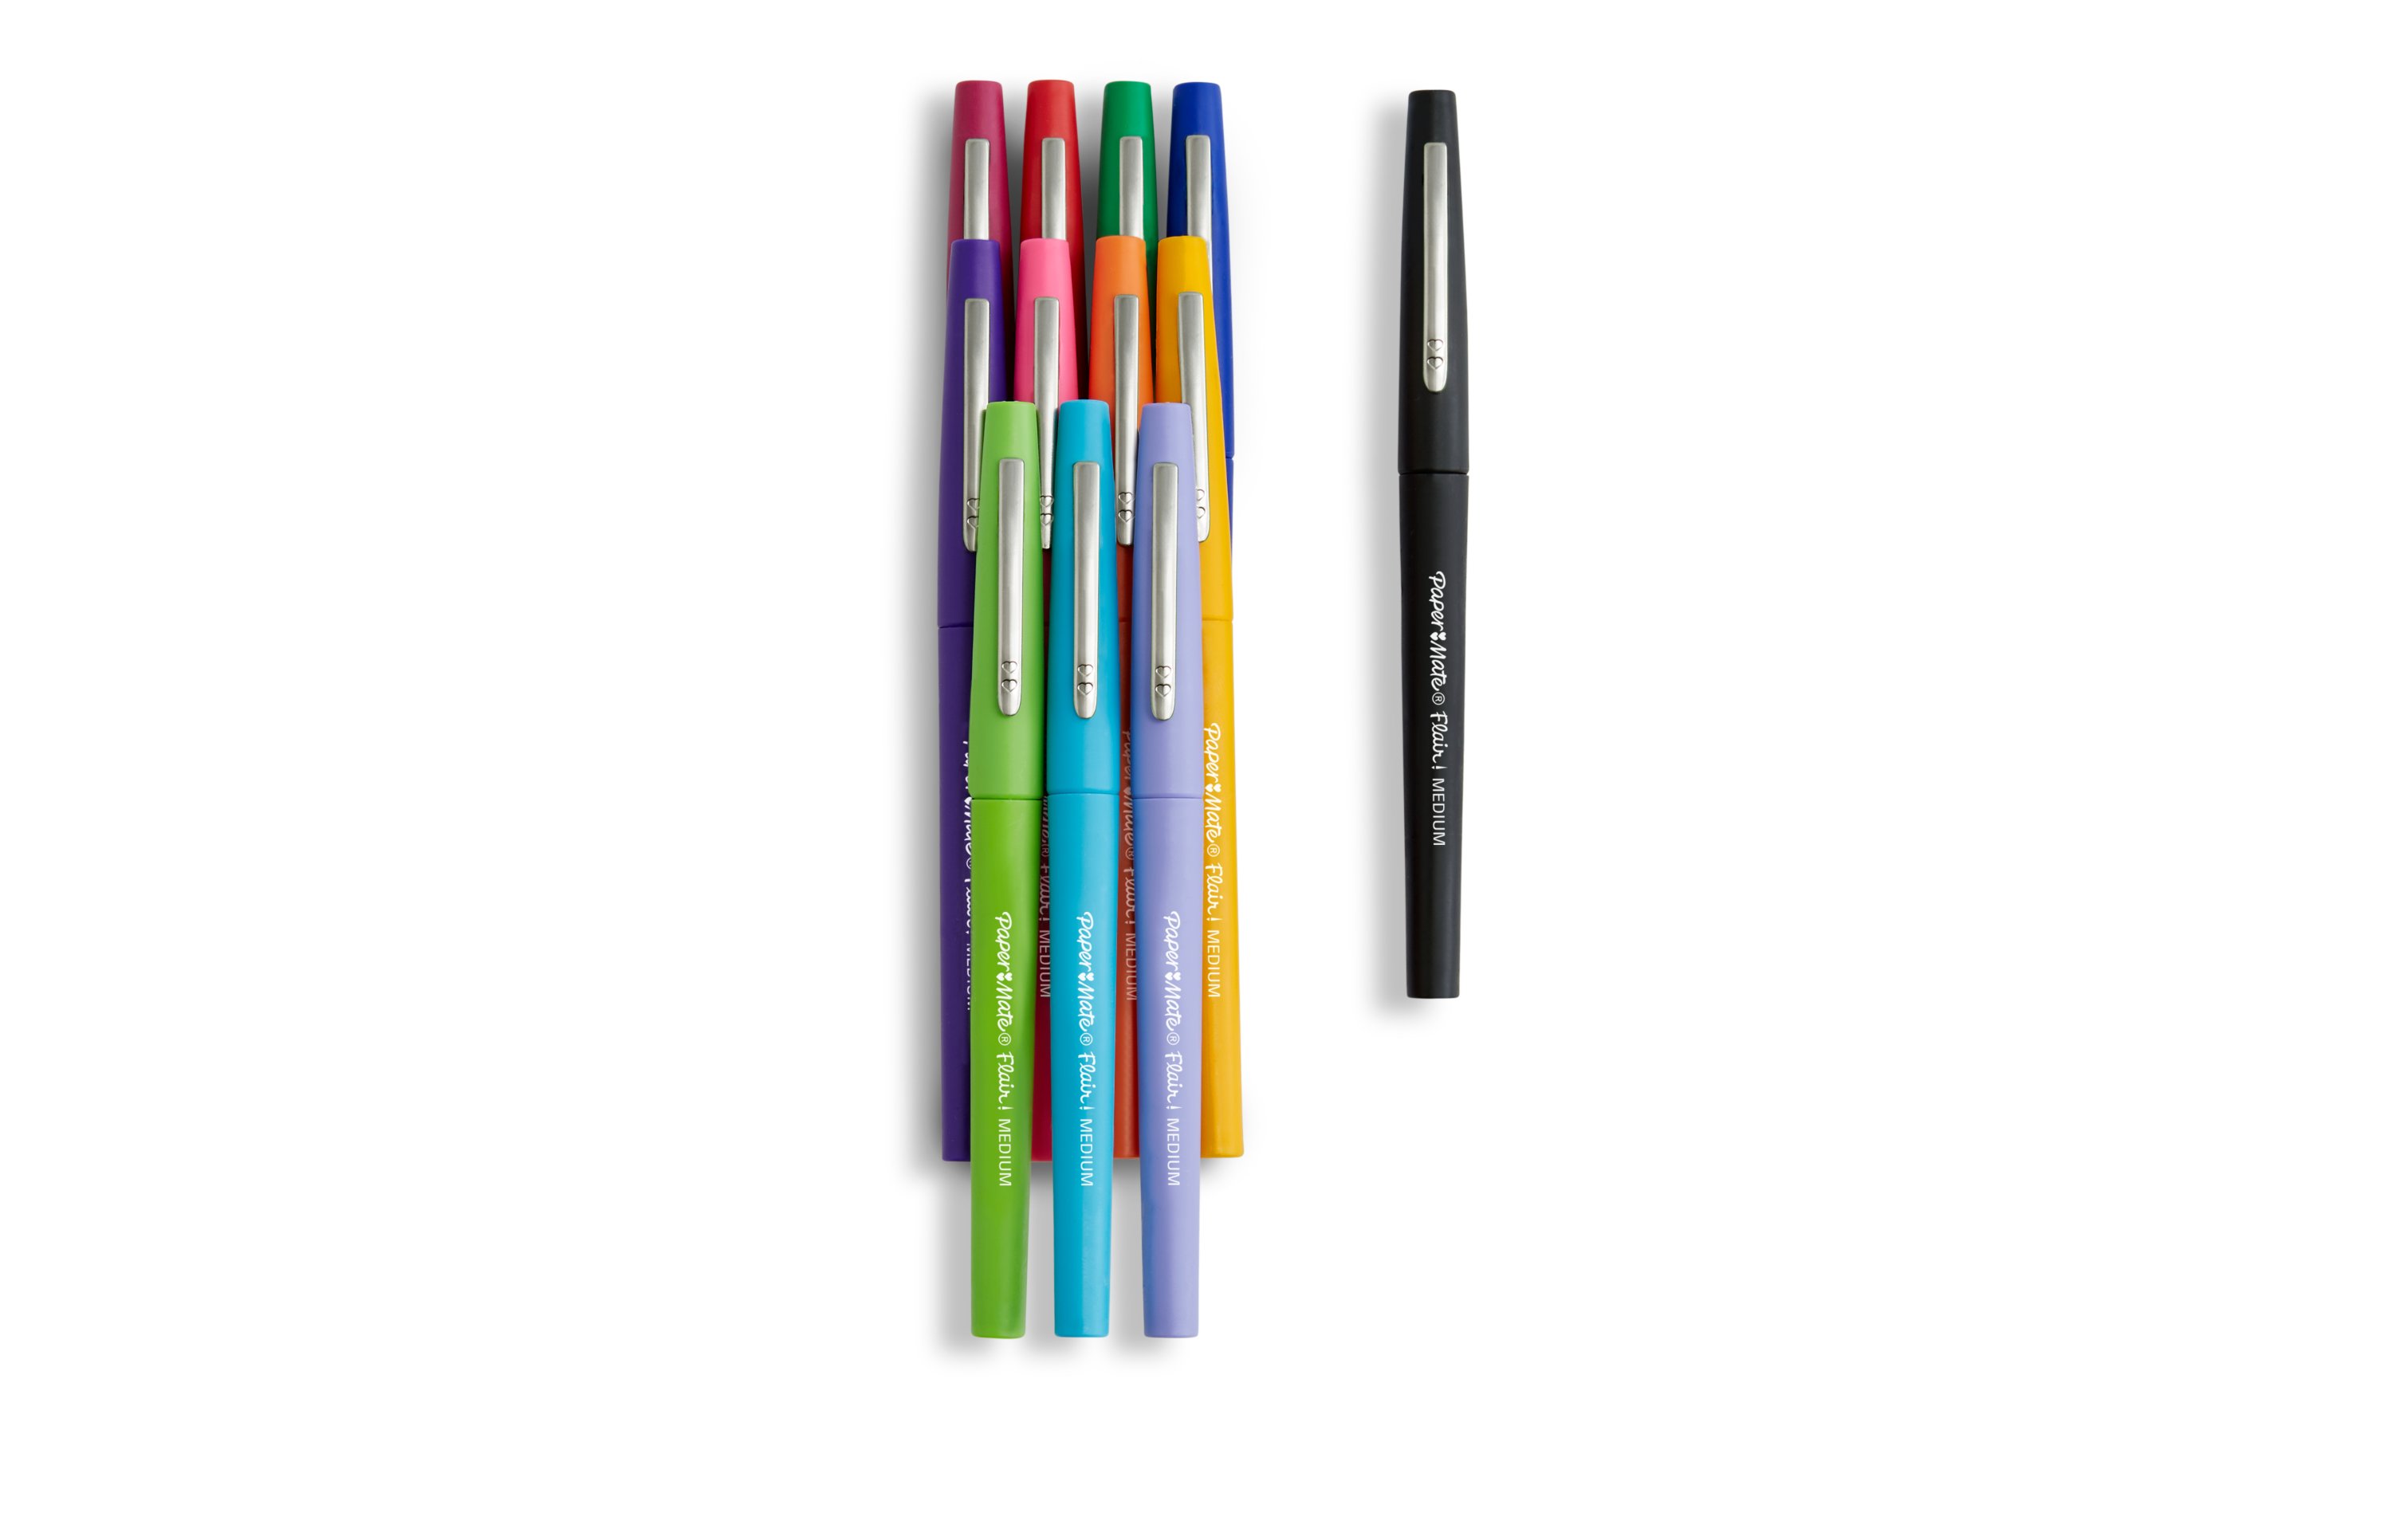 The Mizzou Store - Paper Mate Medium Felt Tip Pens 10-Pack